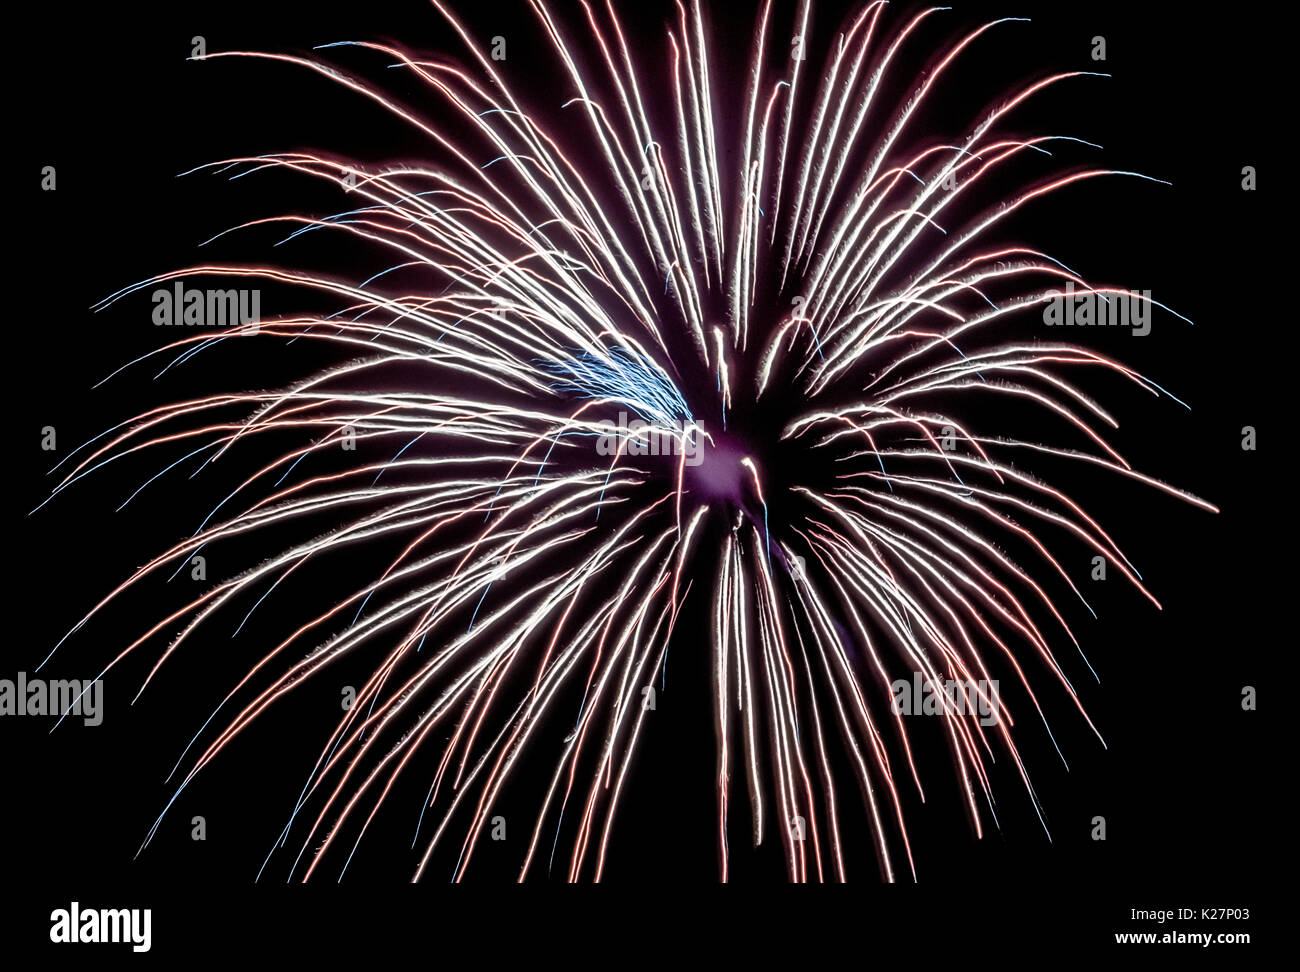 Eine Antenne Feuerwerk explodiert mit einem hellen Streifen von Schießpulver in einer pyrotechnischen Vorrichtung, in einen dunklen Himmel, ist der Hintergrund für diese ästhetische Anzeige erschossen wurde erstellt. Stockfoto